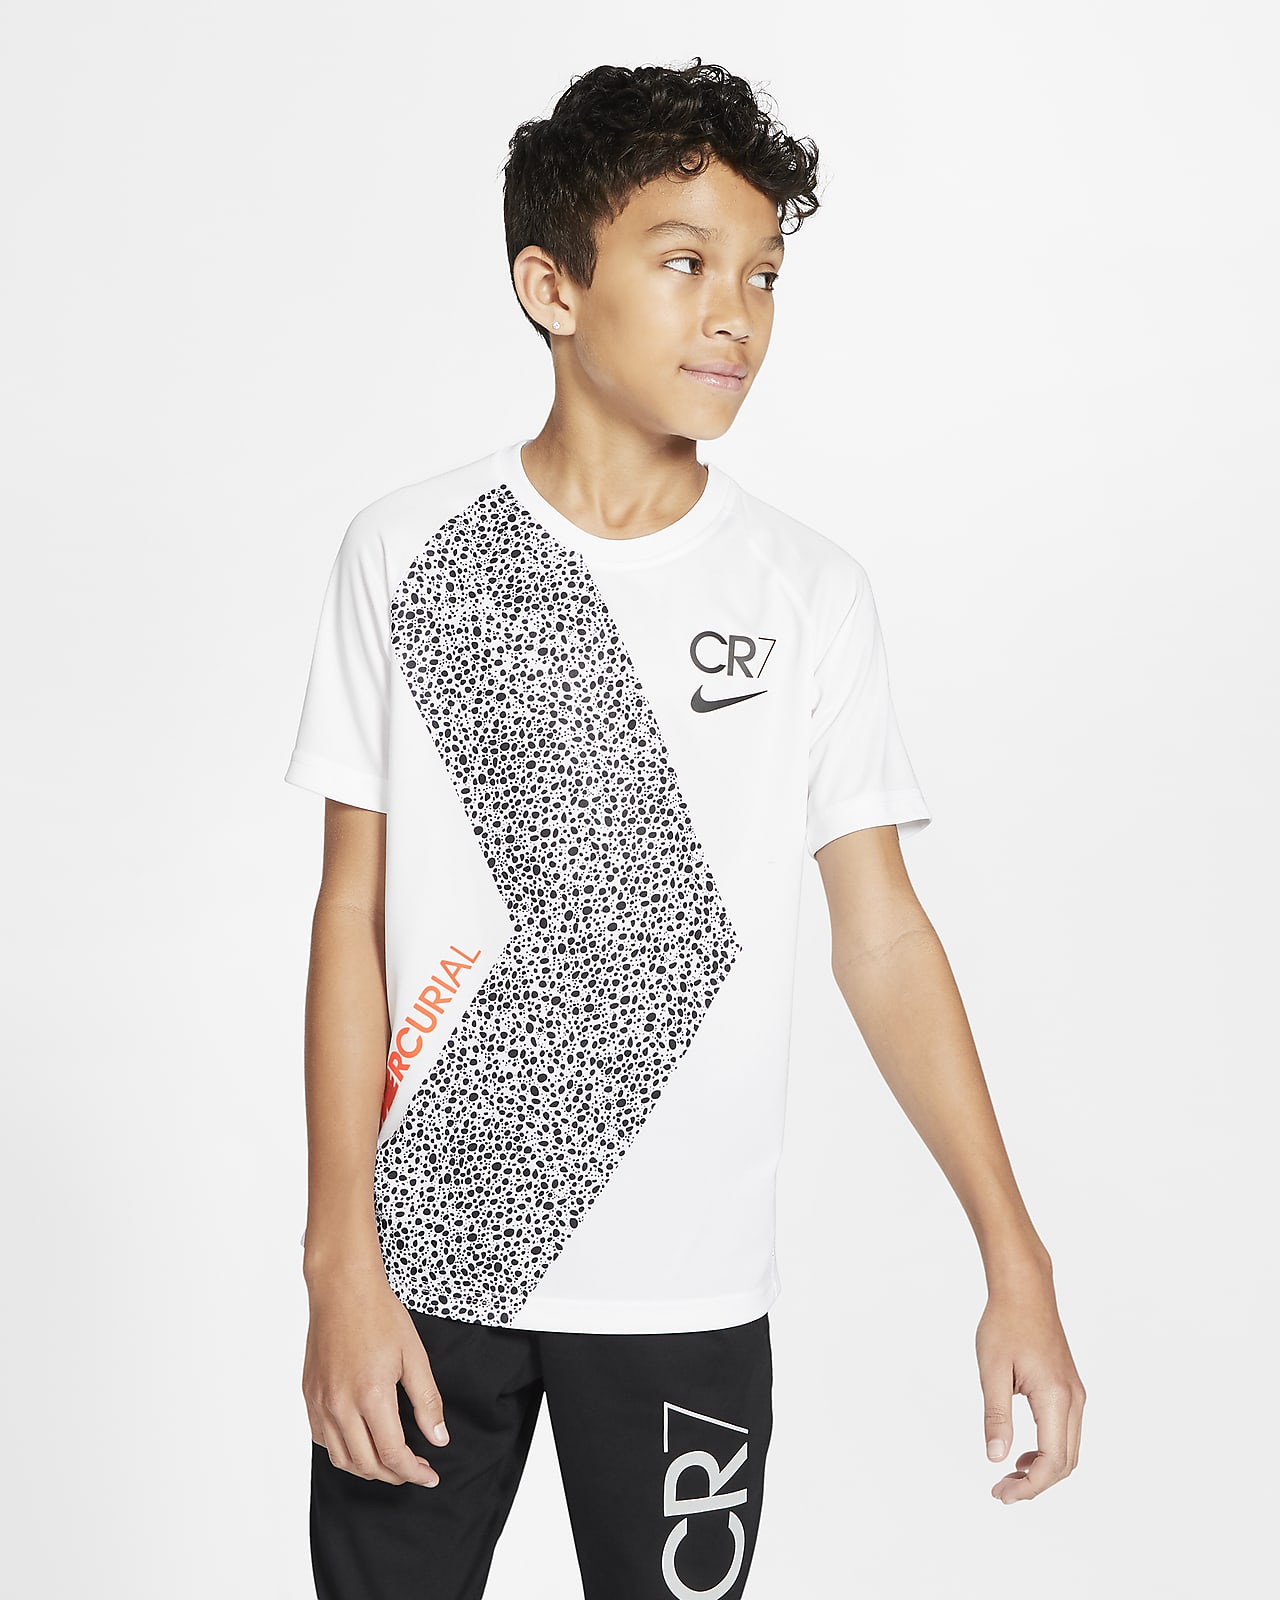 Nike Dri-FIT CR7 Big Kids' Short-Sleeve 